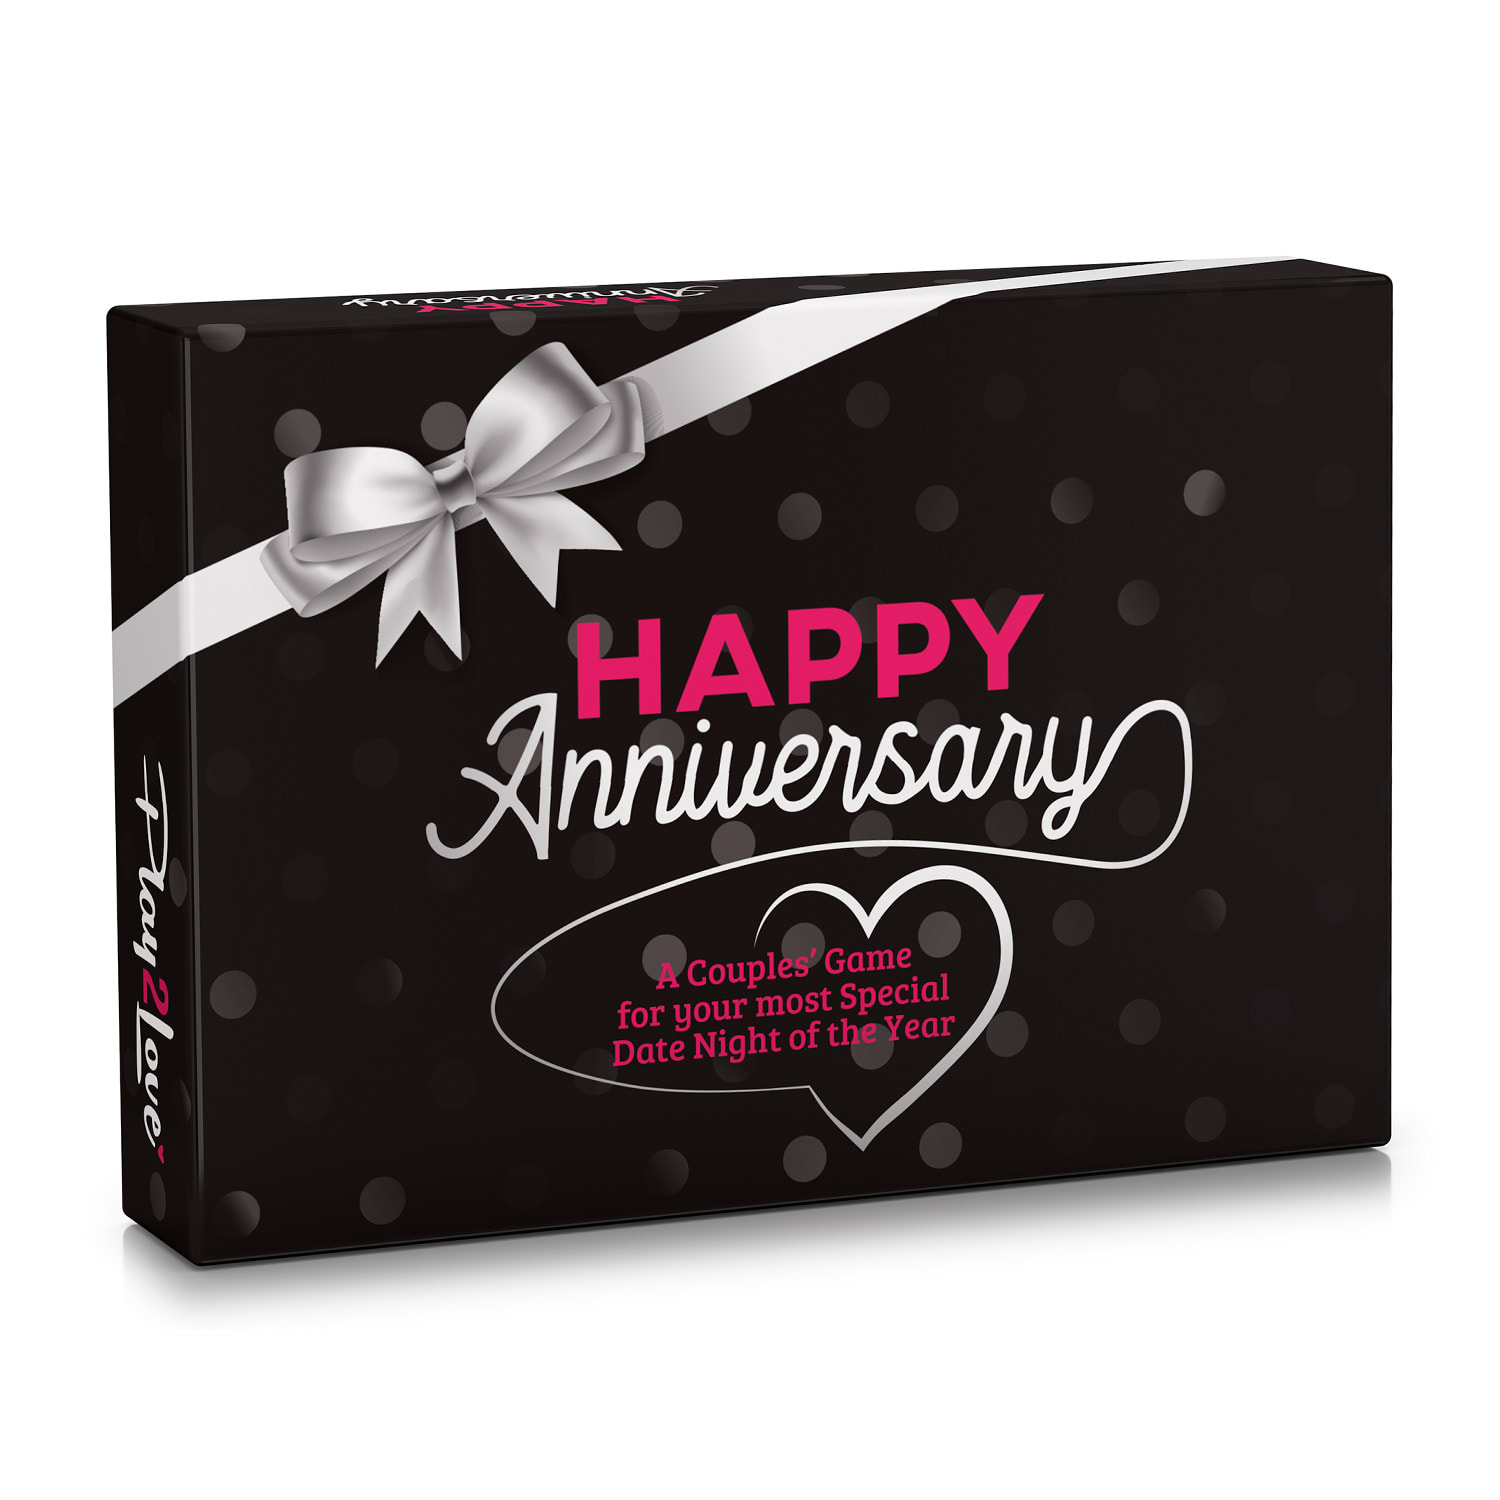 Spielehelden Happy Anniversary Black Edition, Joc de cărți pentru cupluri, 110 întrebări, Cutie cadou în limba engleză